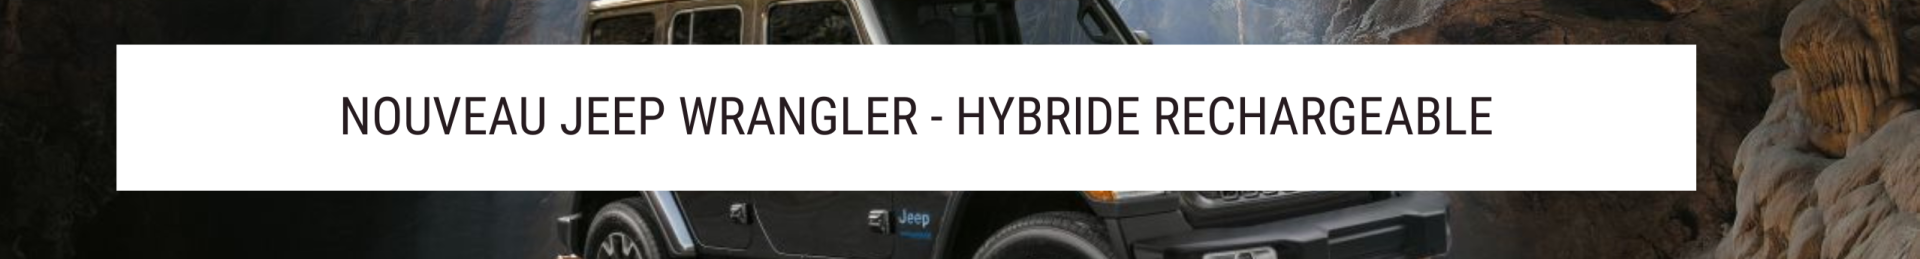 Nouveau Jeep Wrangler Hybride Rechargeable : Une icône tout-terrain électrifiée